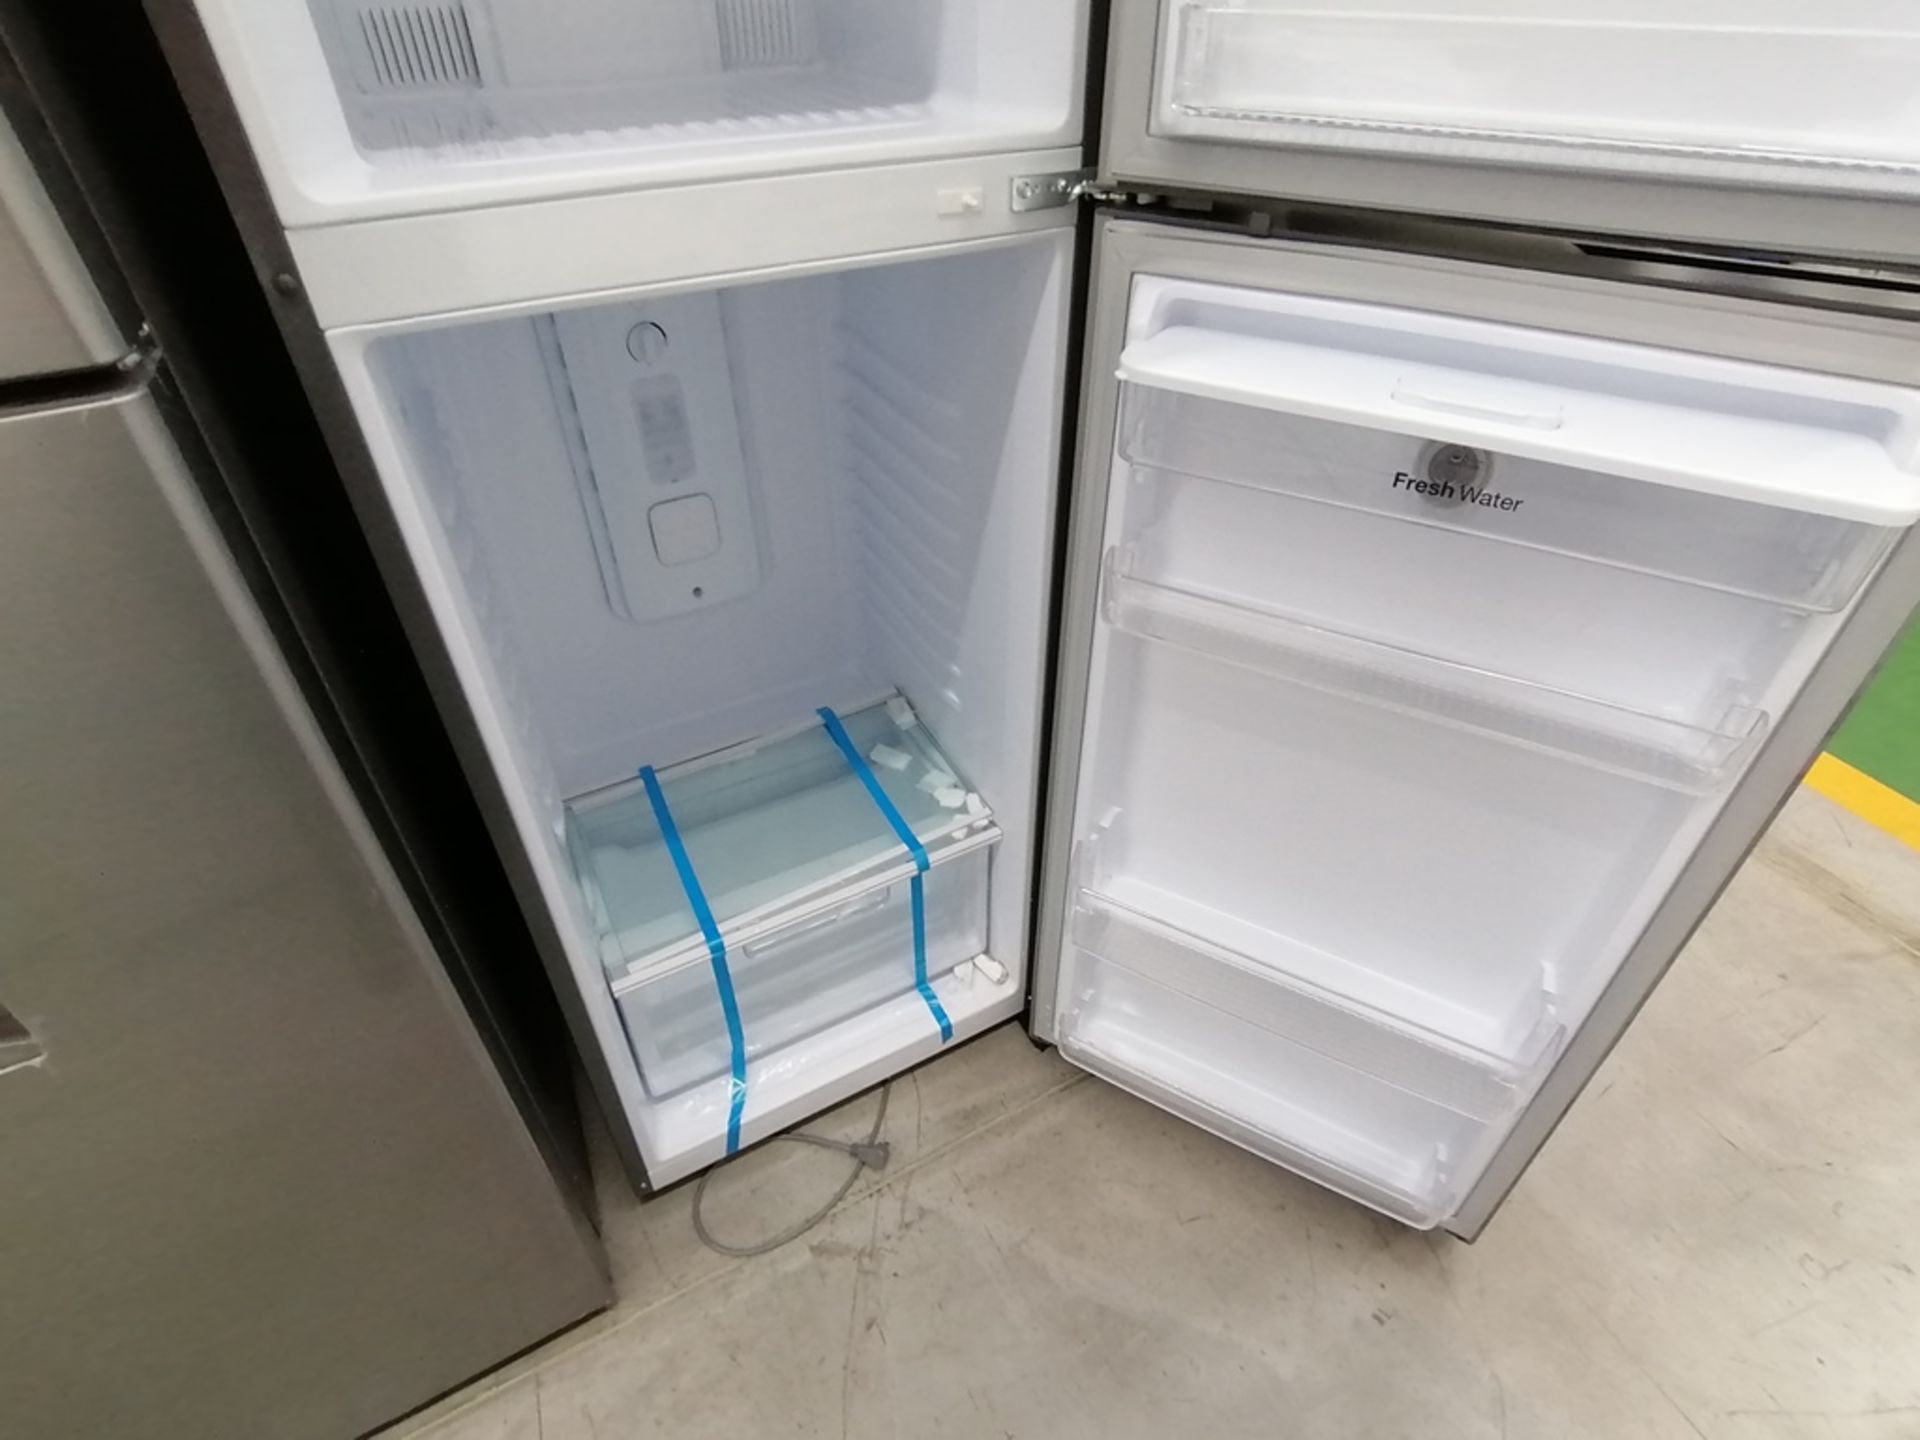 Lote de 2 refrigeradores incluye: 1 Refrigerador con dispensador de agua, Marca Winia, Modelo DFR40 - Image 14 of 15